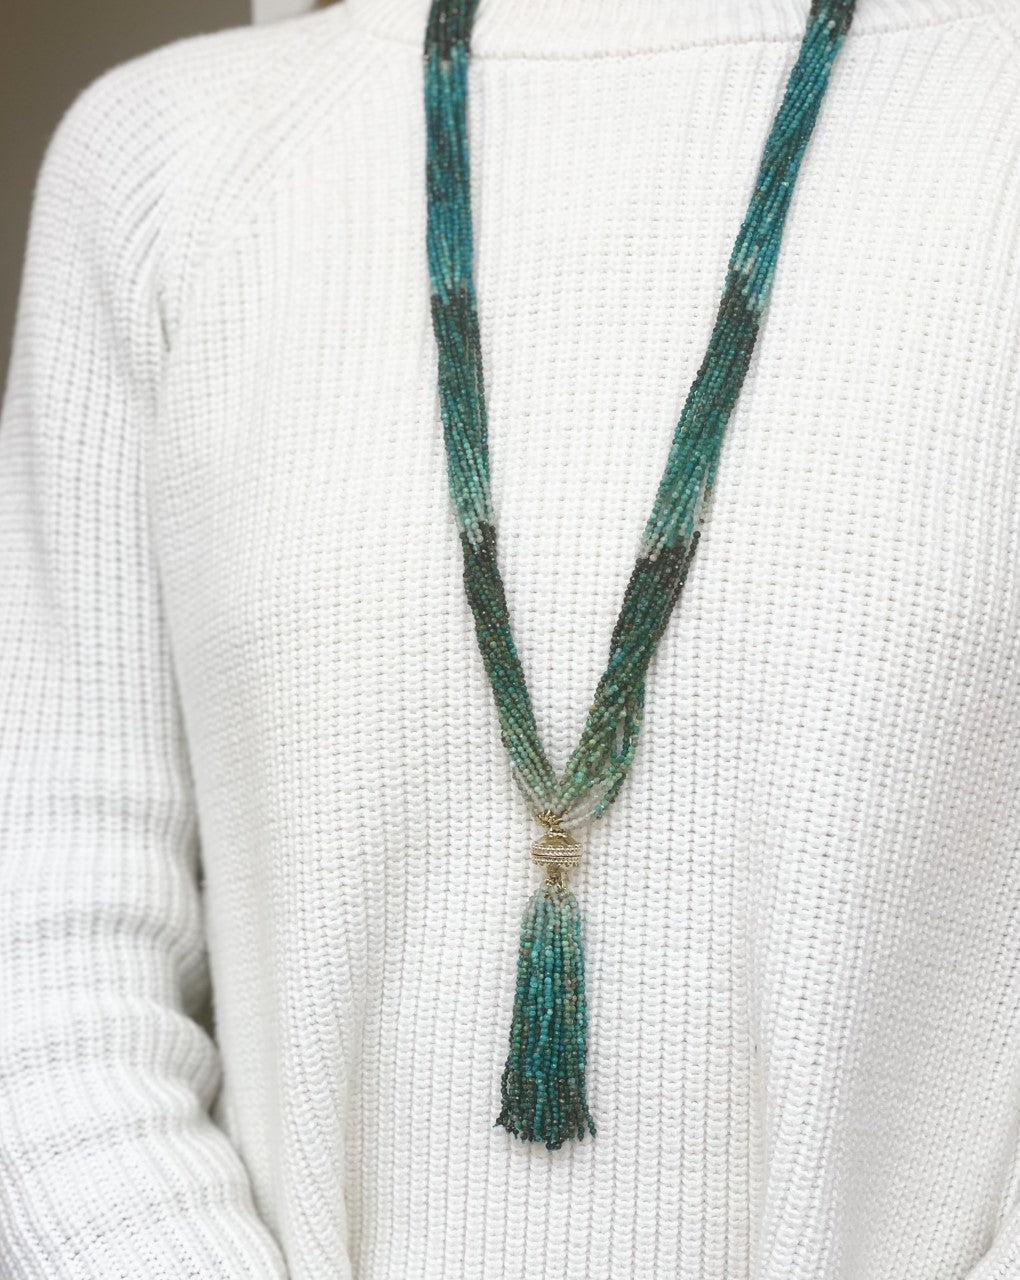 Michel Chrysocolla Multi-Strand Necklace